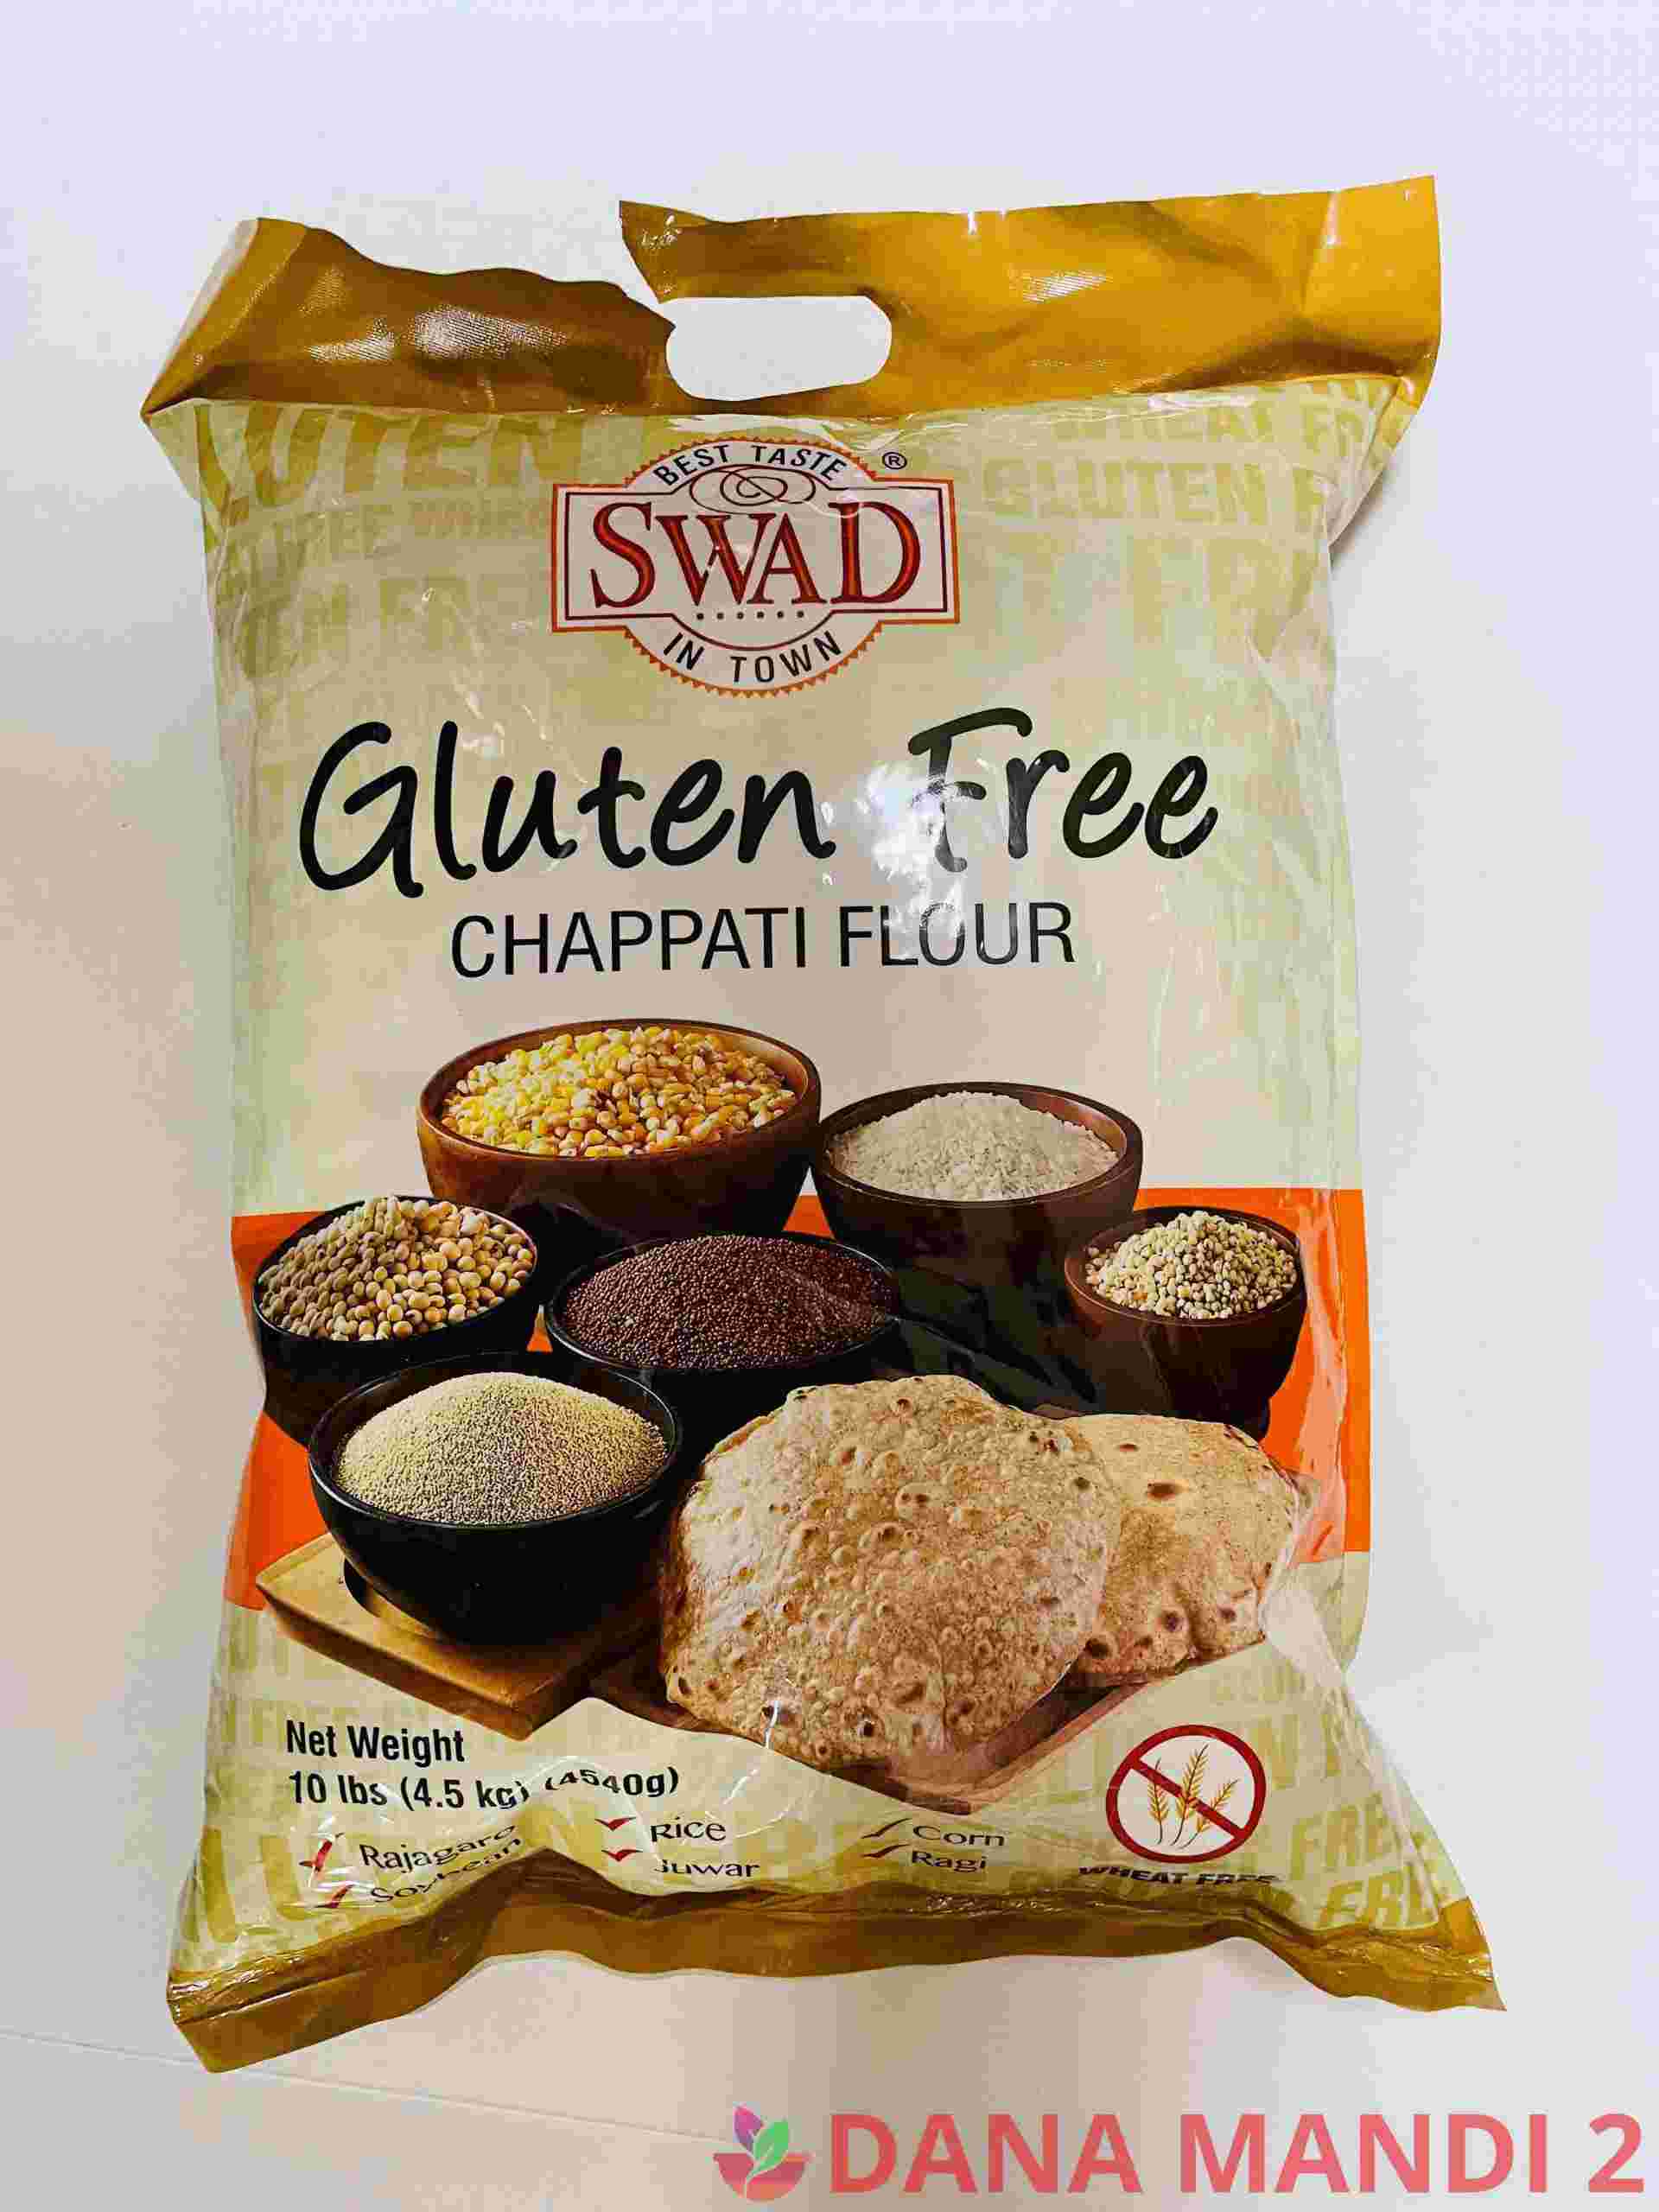 Swad Gluten Free Chappati Flour